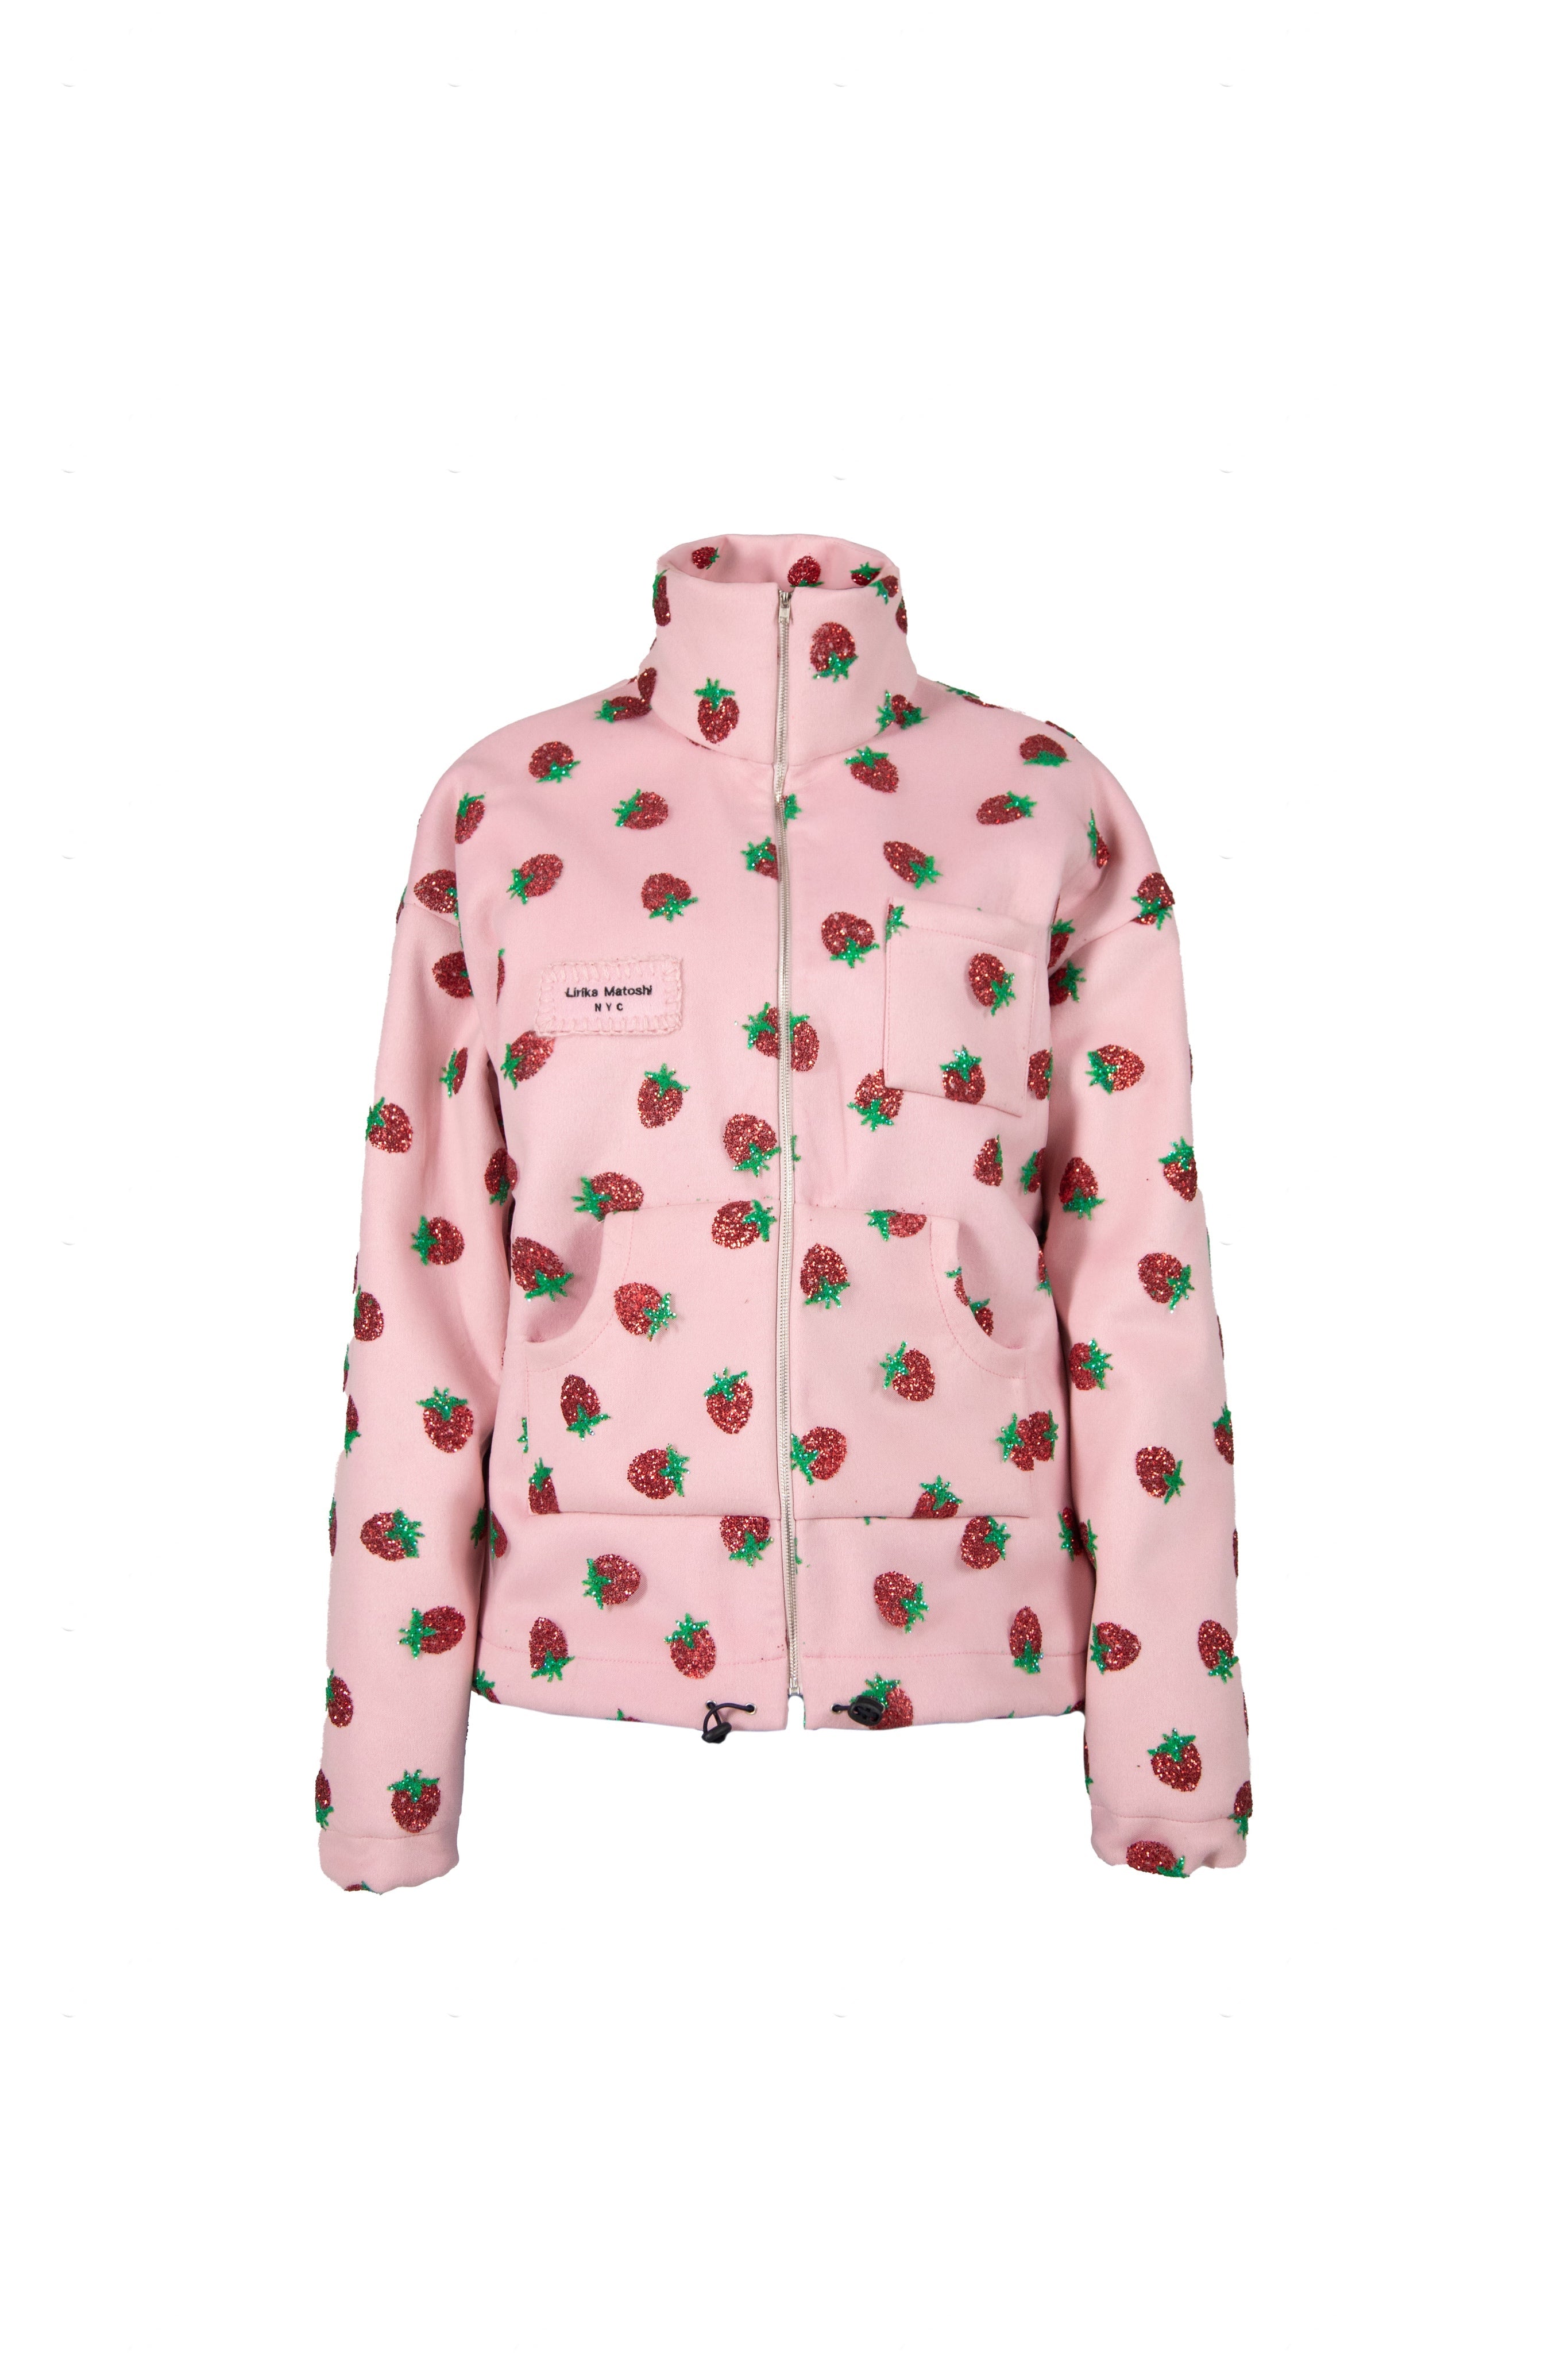 Strawberry Wool Jacket – Lirika Matoshi